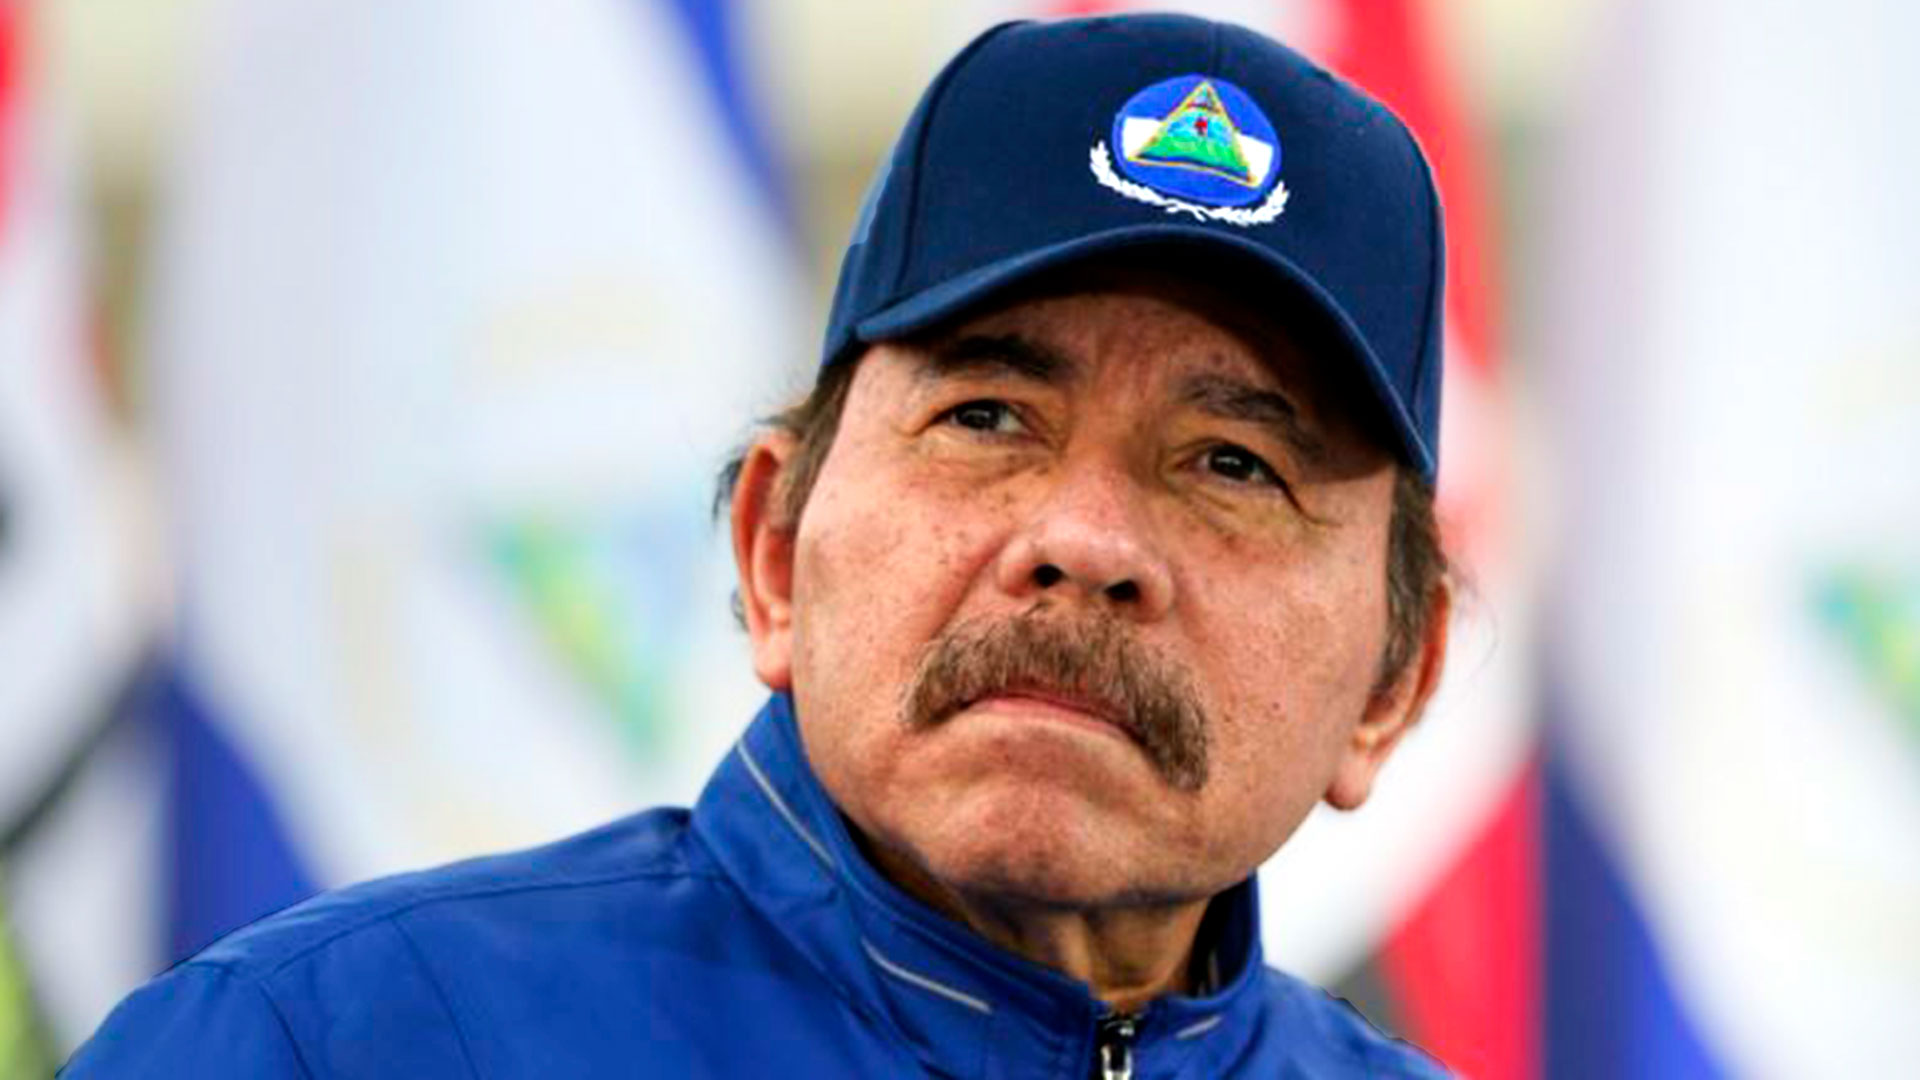 La CIDH pidió la liberación “inmediata” de los opositores detenidos por el régimen de Ortega en Nicaragua